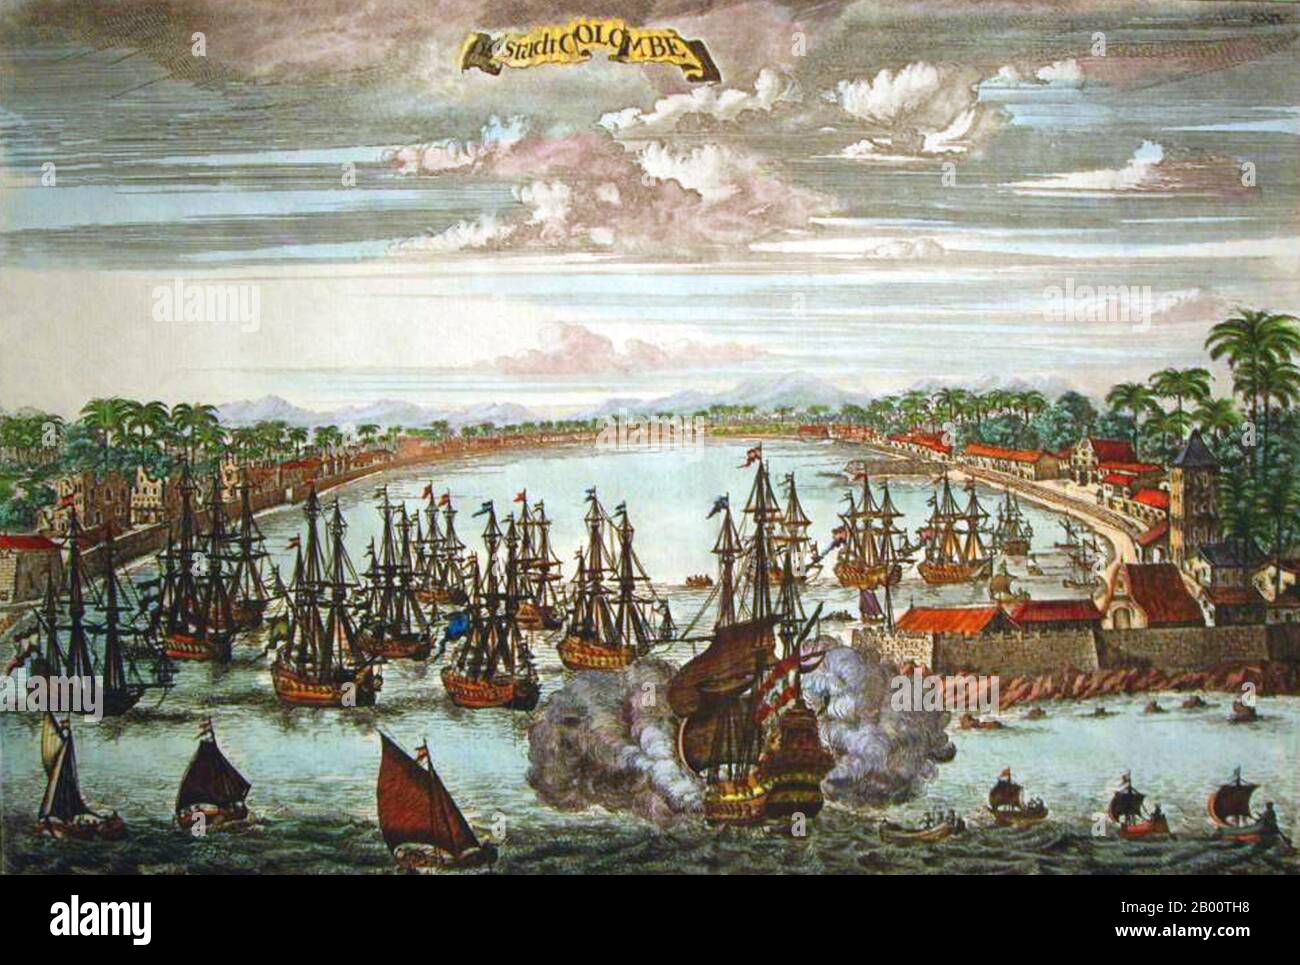 Sri Lanka: 'De Stadt Colombe (la ville de Colombo)'. Gravure en cuivre d'un livre hollandais, c. 1775, après une gravure originale de Johannes Kip (1652-1722), c. 1680. Le Sri Lanka a toujours été un important poste portuaire et commercial dans le monde ancien, et est de plus en plus fréquenté par des navires marchands du Moyen-Orient, de la Perse, de la Birmanie, de la Thaïlande, de la Malaisie, de l'Indonésie et d'autres parties de l'Asie du Sud-est. Les îles étaient connues des premiers explorateurs européens d'Asie du Sud et installées par de nombreux groupes de marchands arabes et malais. Banque D'Images